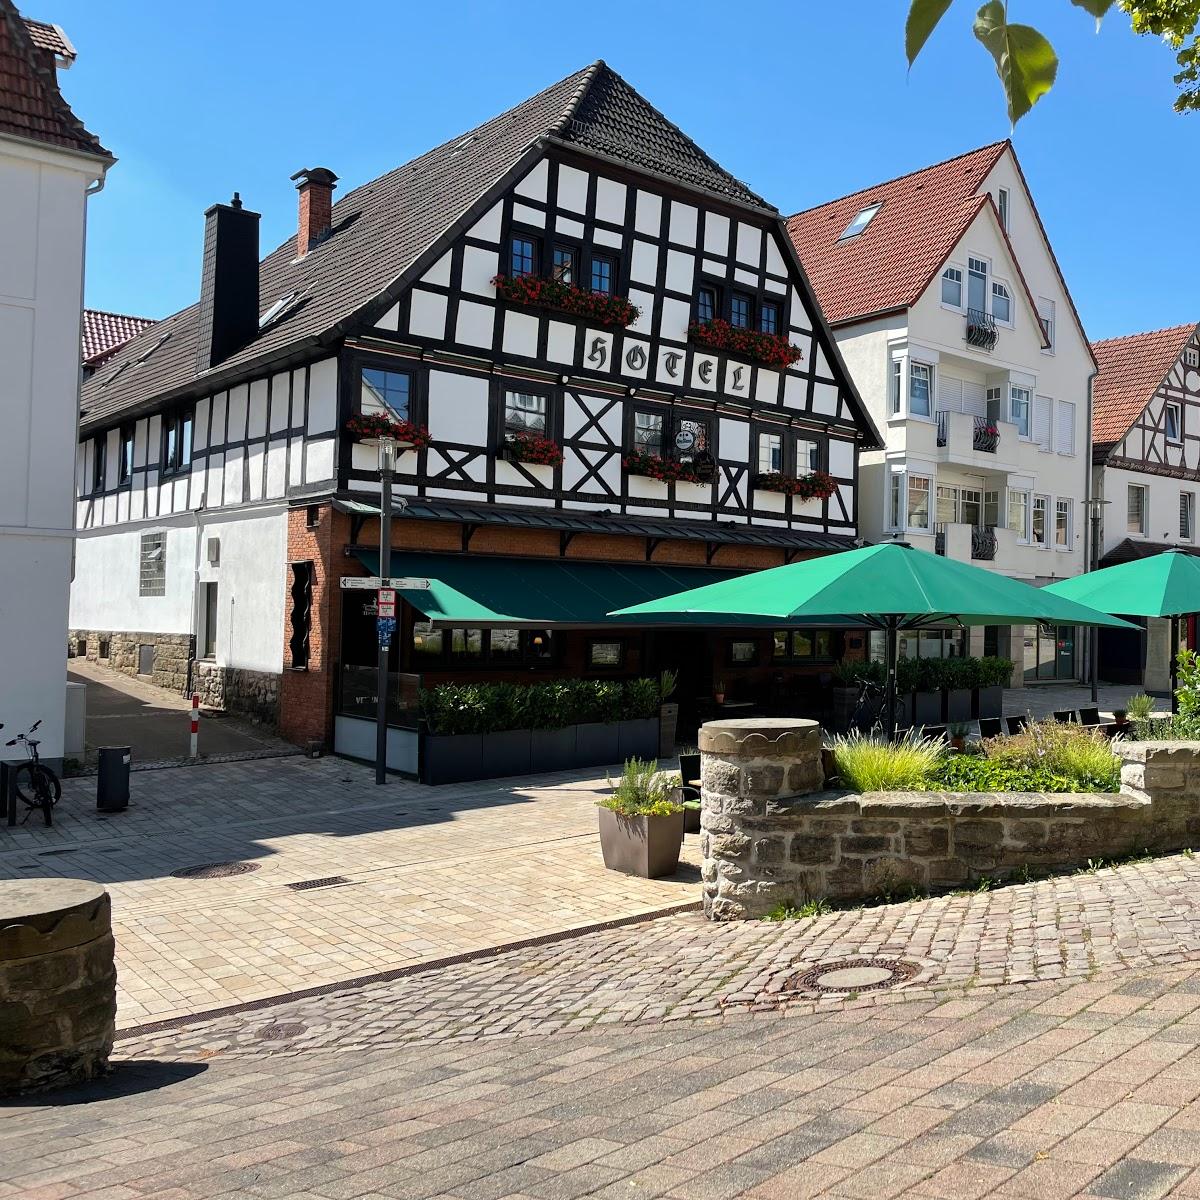 Restaurant "Zum Braunen Hirschen" in Bad Driburg